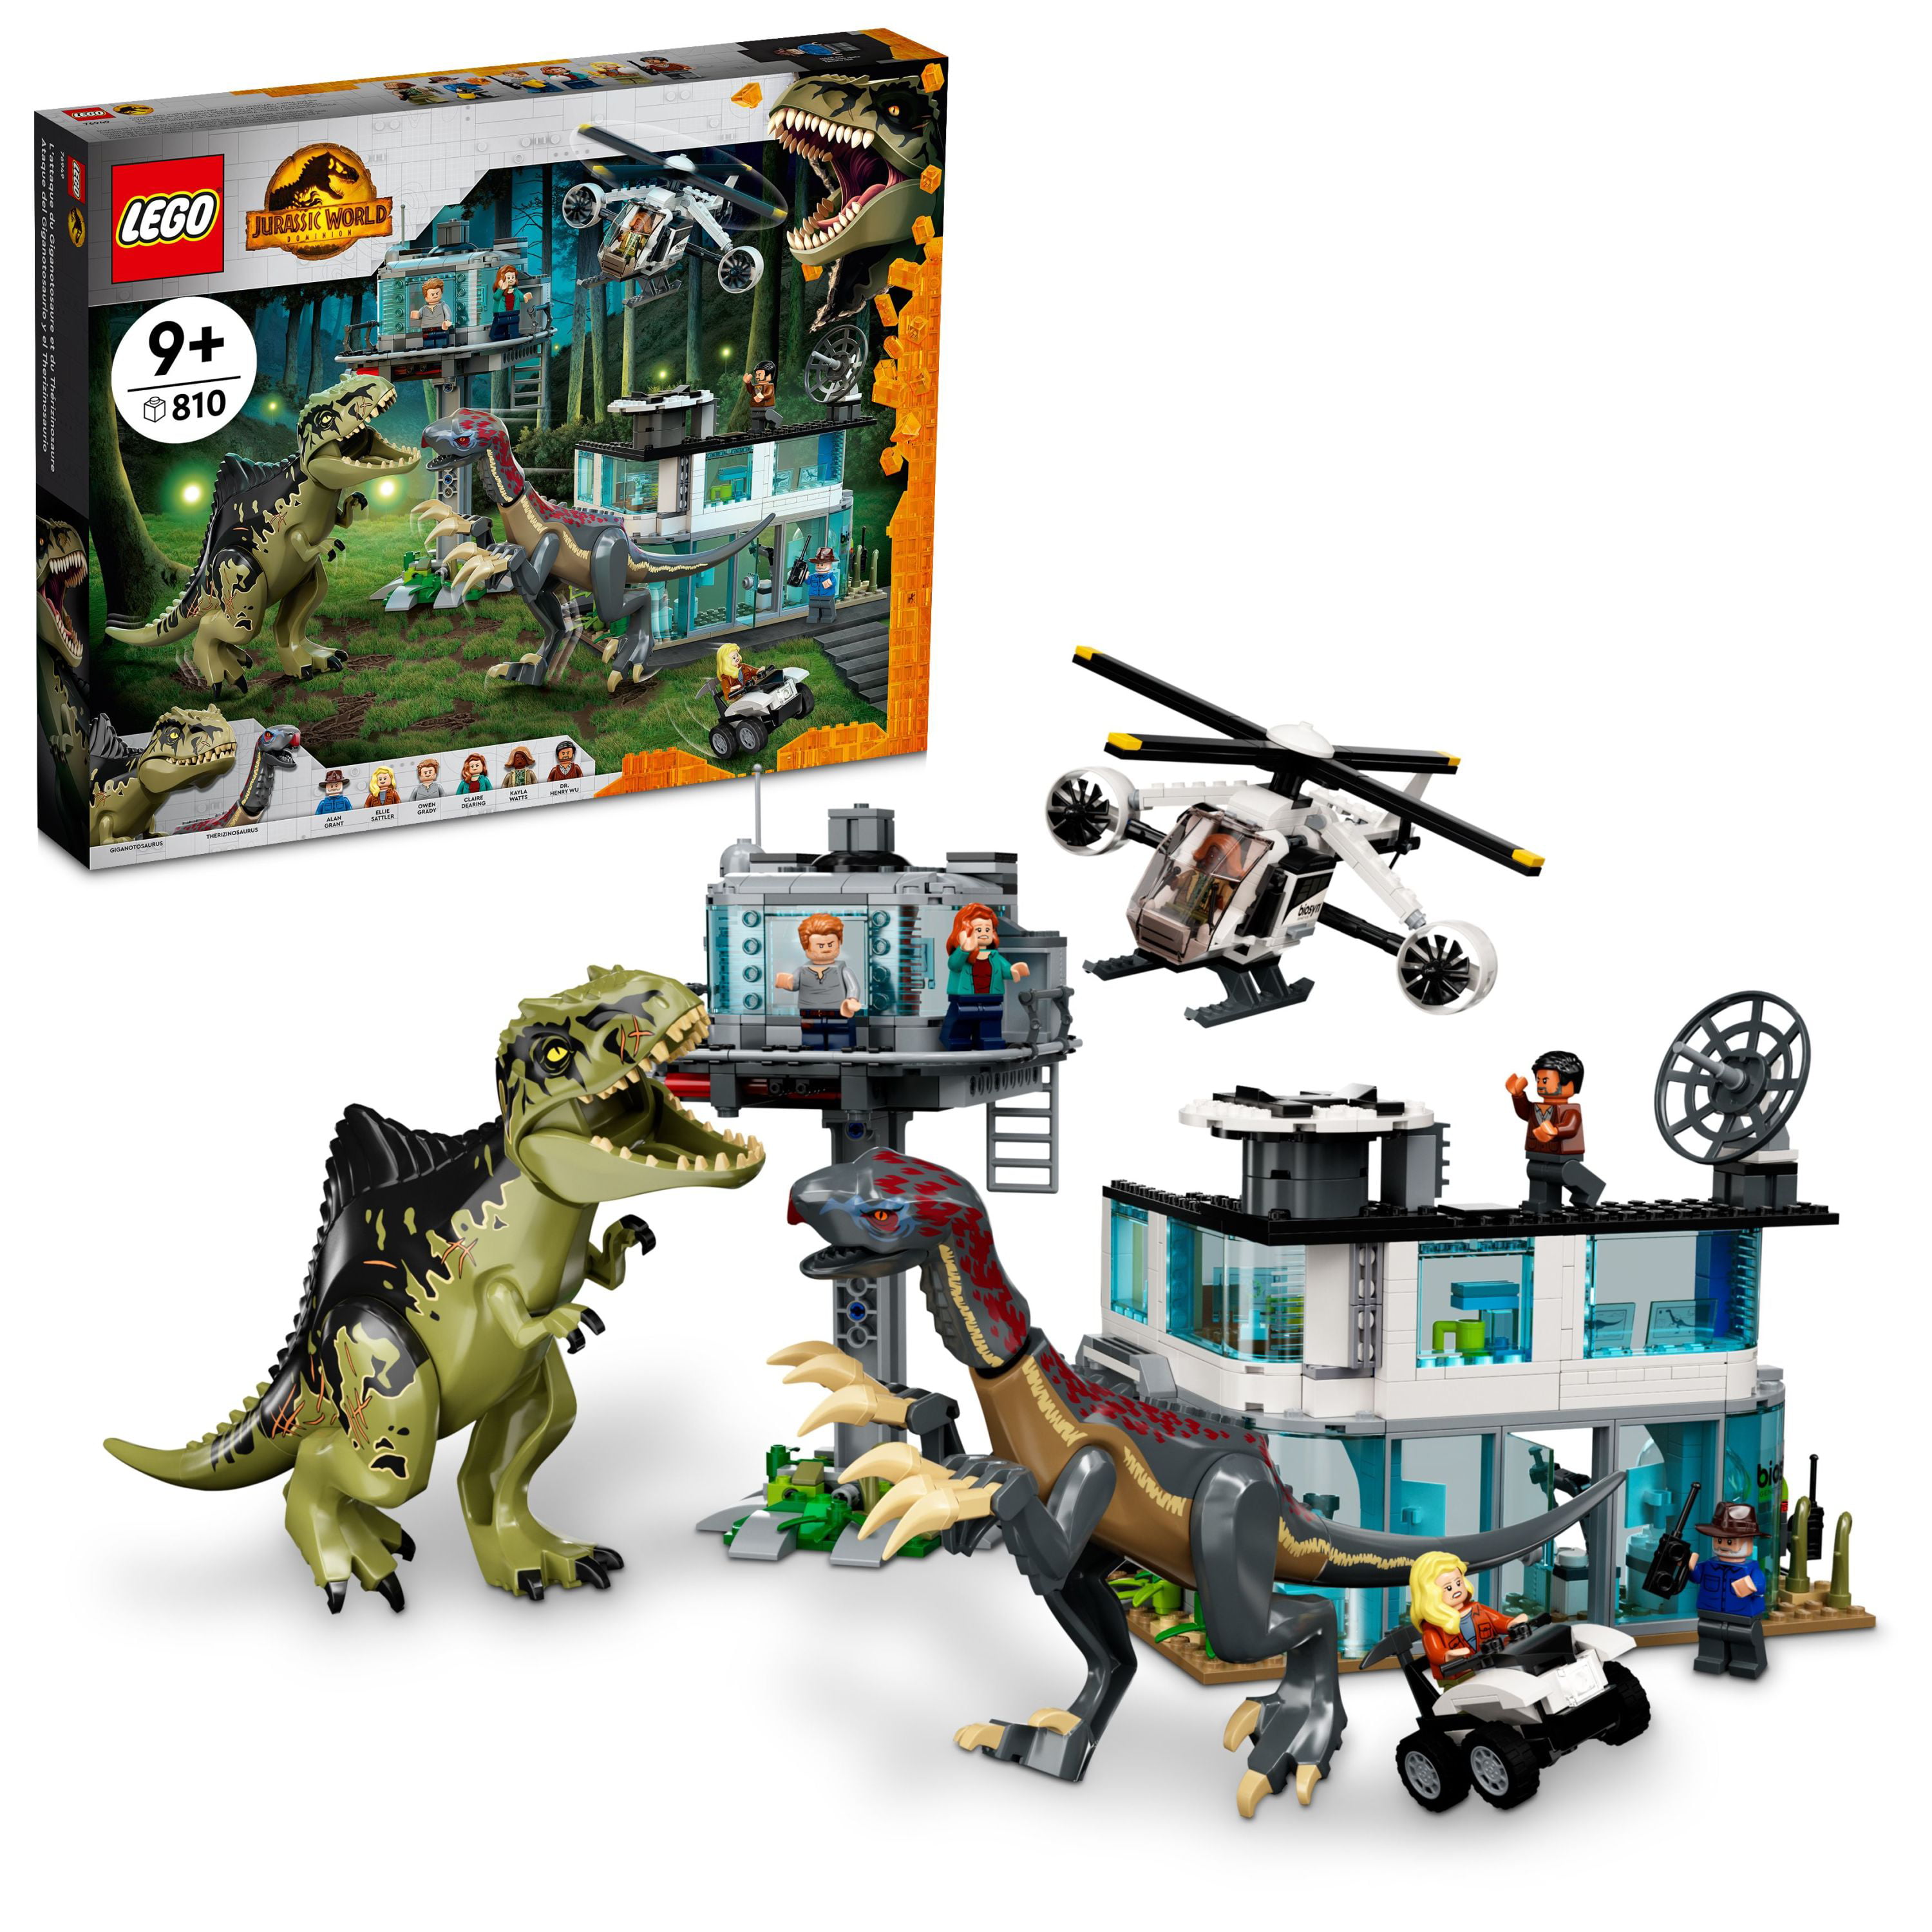 Limited Edition Lego Jurassic World Owen Grady Polybag